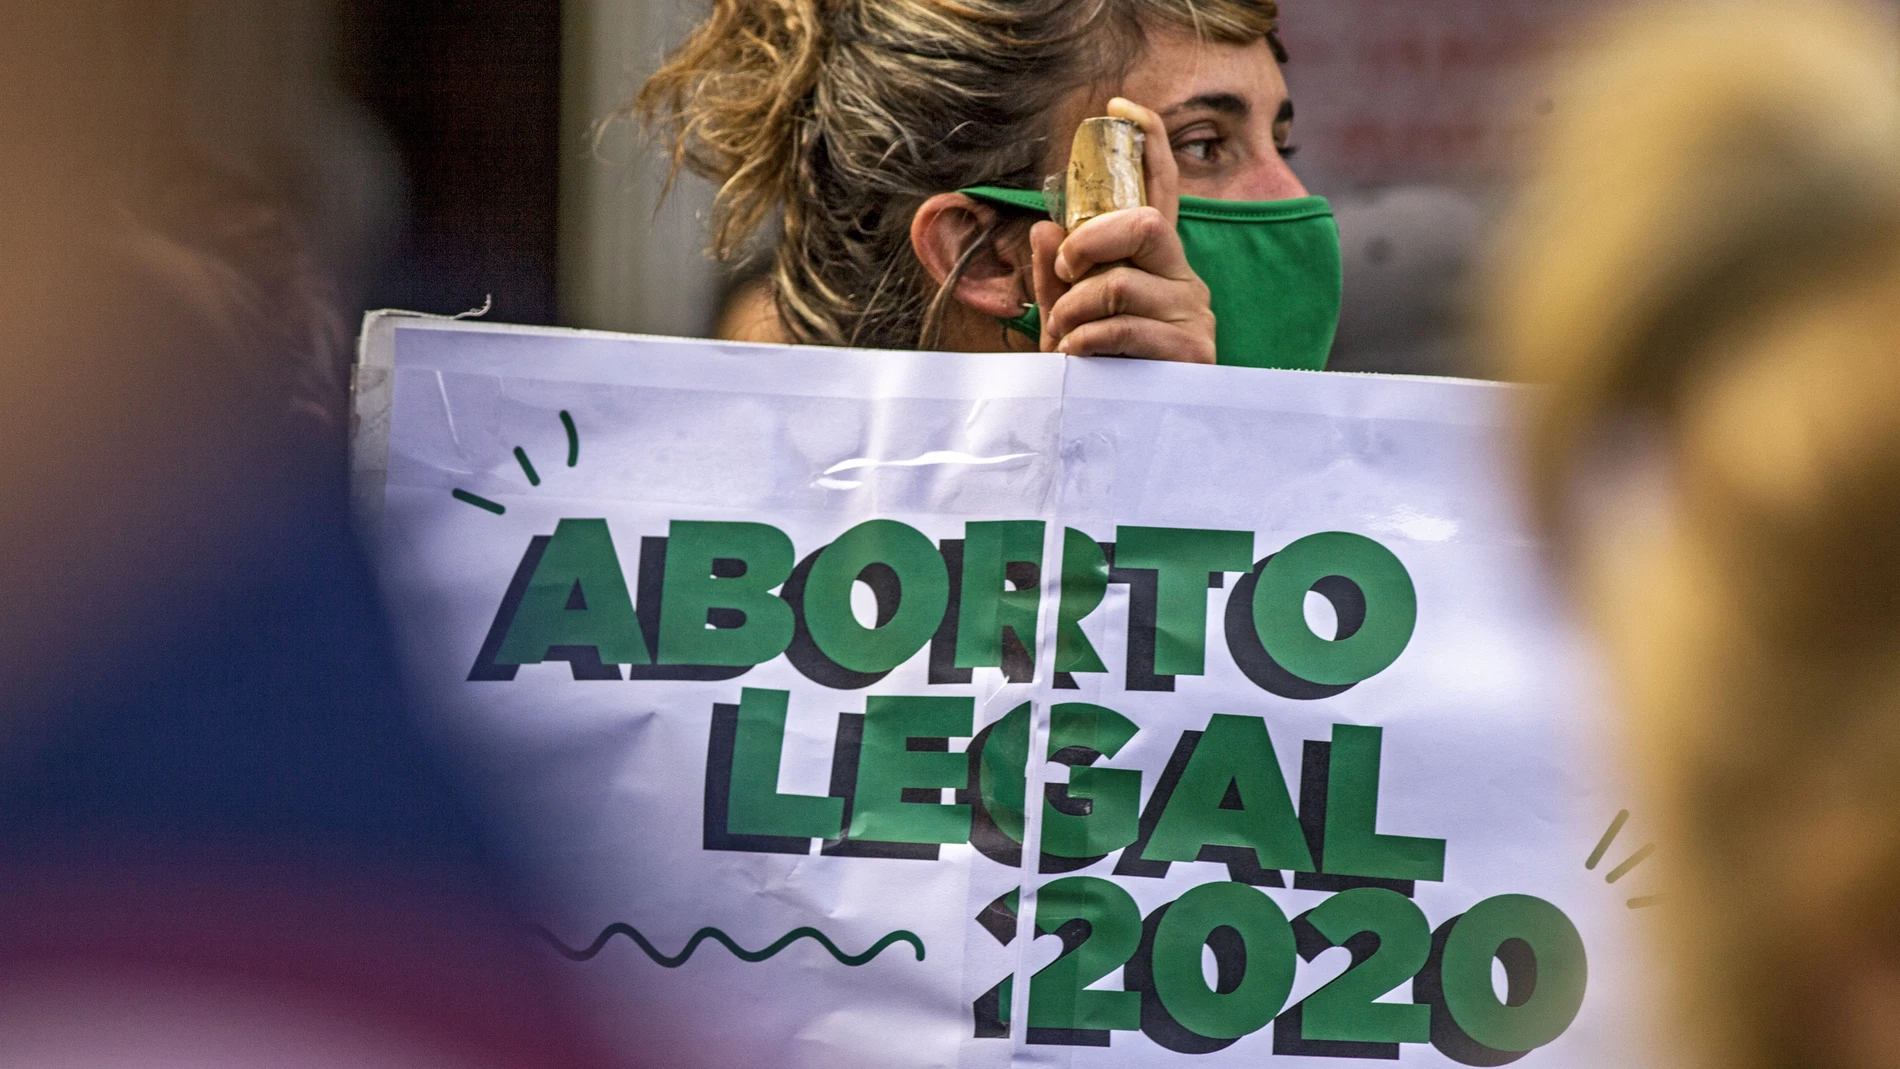 Manifestación a favor de la legalización del aborto en Argentina.04/11/2020